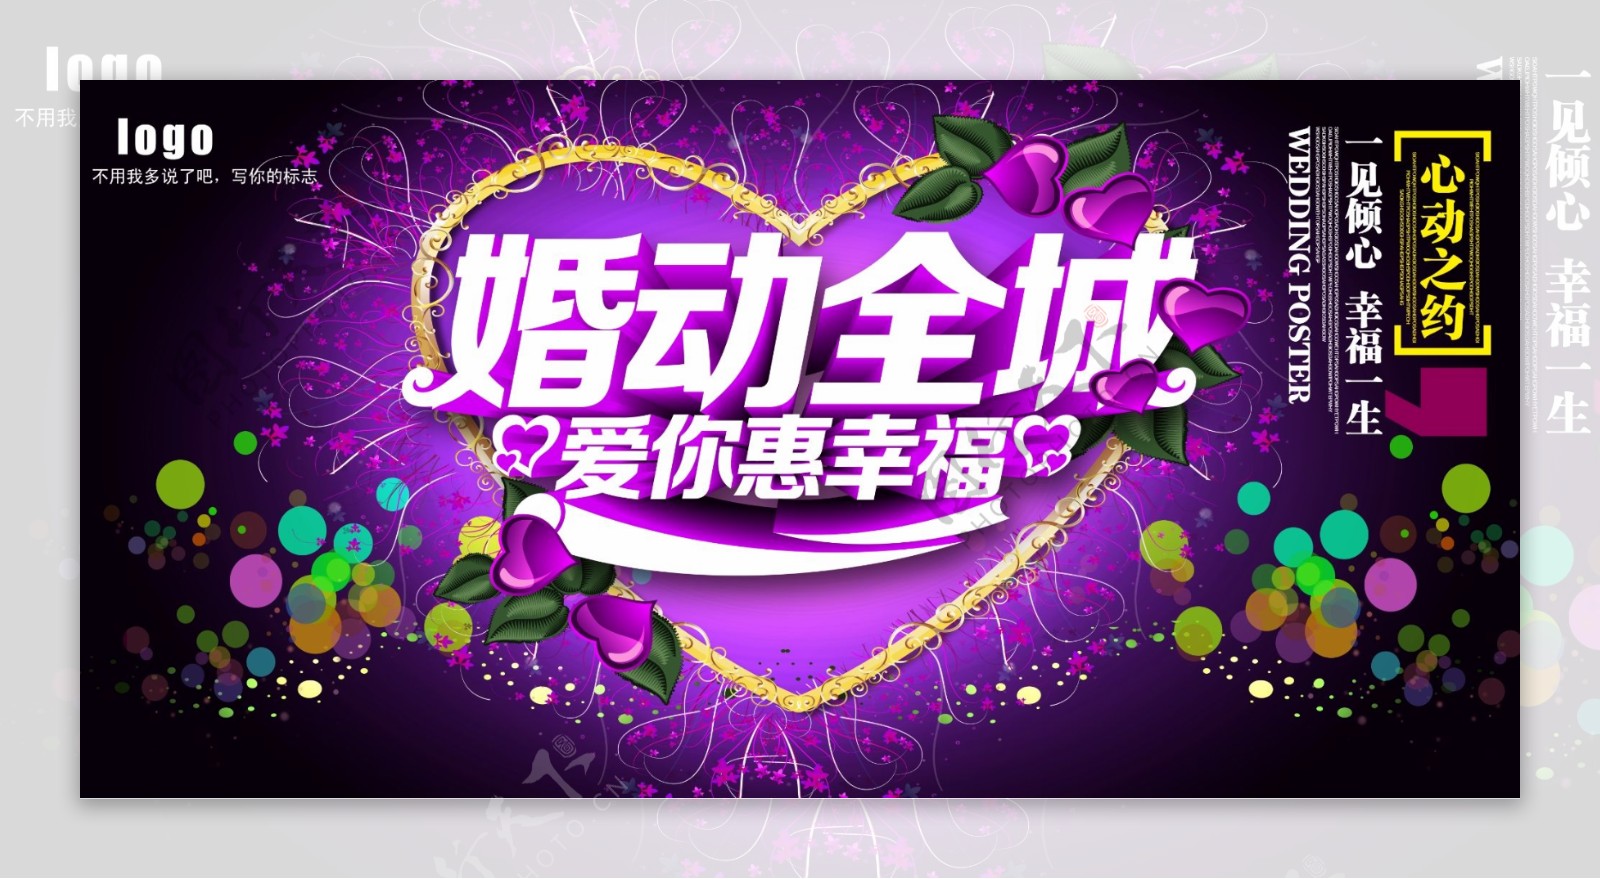 浪漫紫色婚庆节日婚纱摄影楼海报展板背景